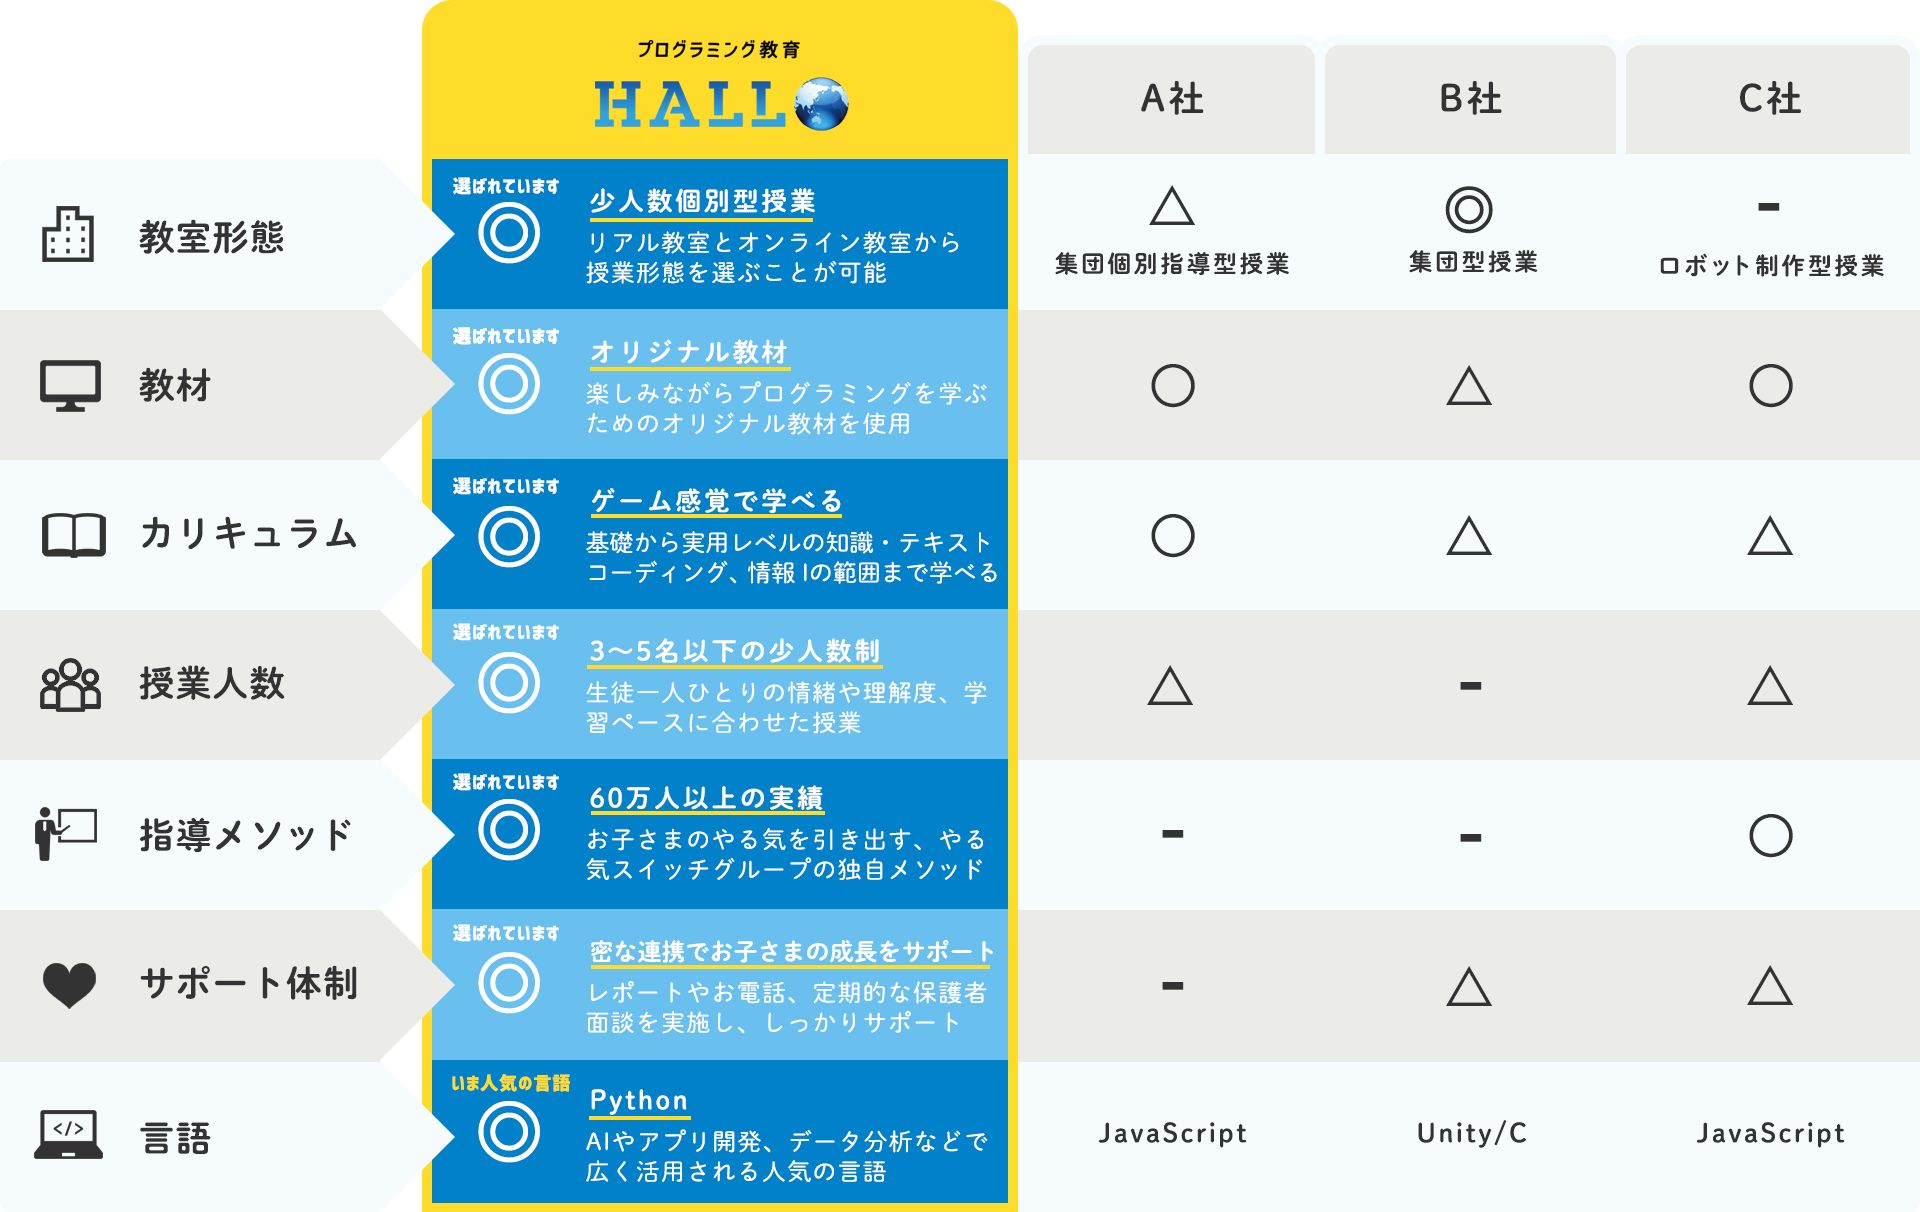 プログラミング教育 HALLOと他プログラミング教室との違い 表